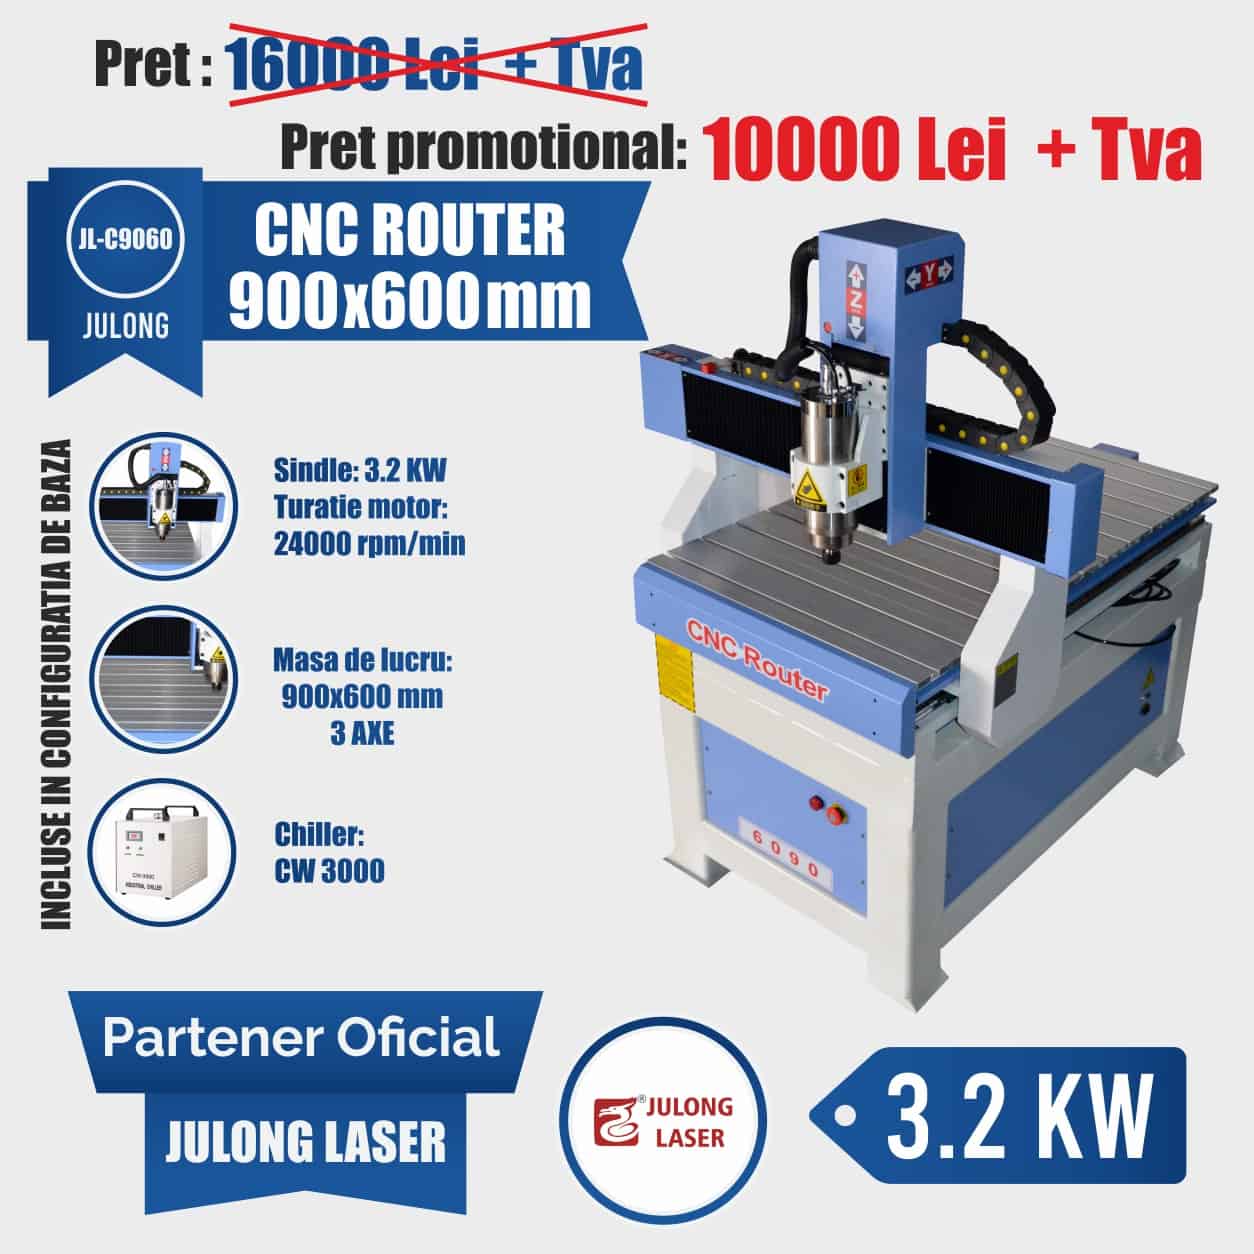 CNC Router 900x600 mm 3.2KW